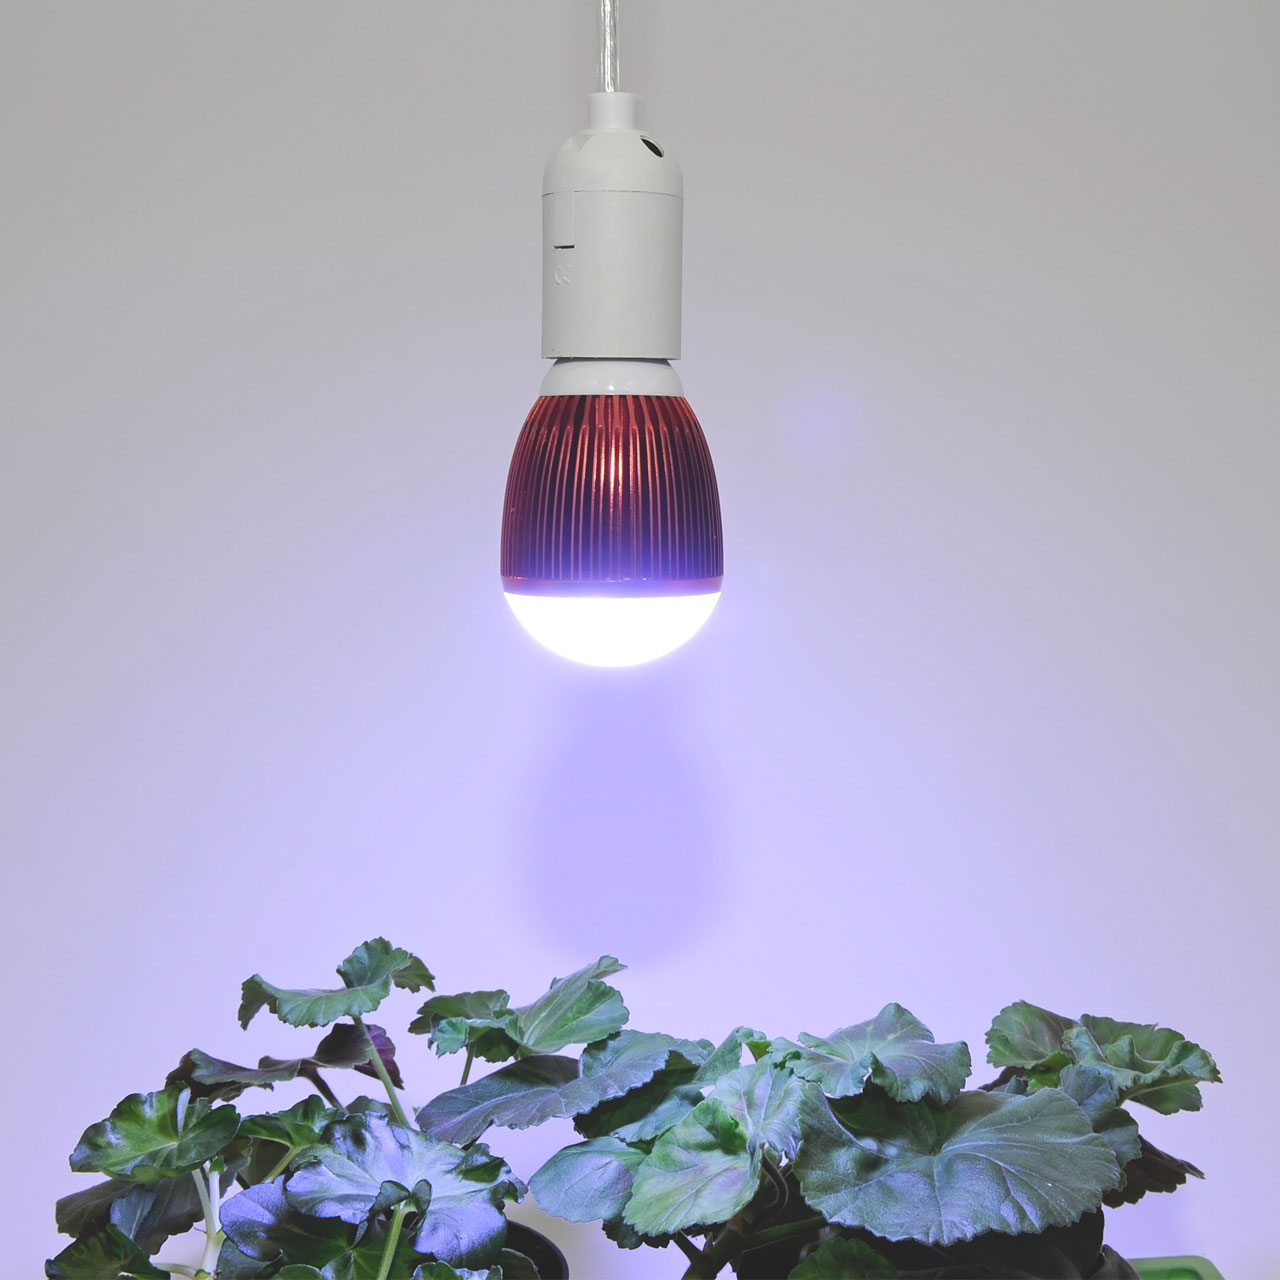 2x4x LED Grow Lampe Leuchtmittel Glühbirne E27 Pflanzenlampe Wachsen Licht Birne 